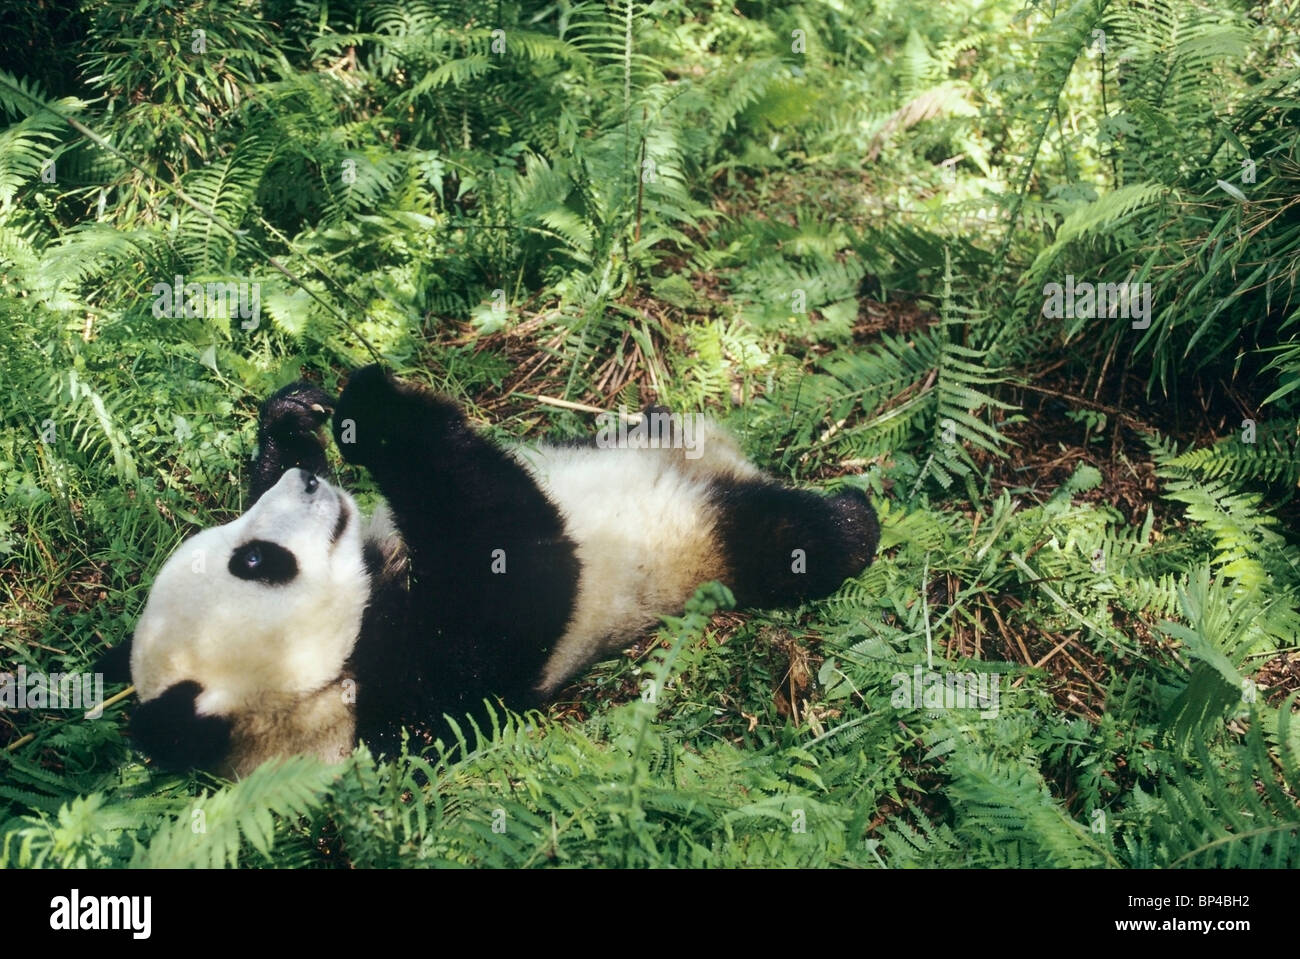 Los jóvenes panda gigante tumbado entre los helechos jugando con bambú, Wolong en China Foto de stock